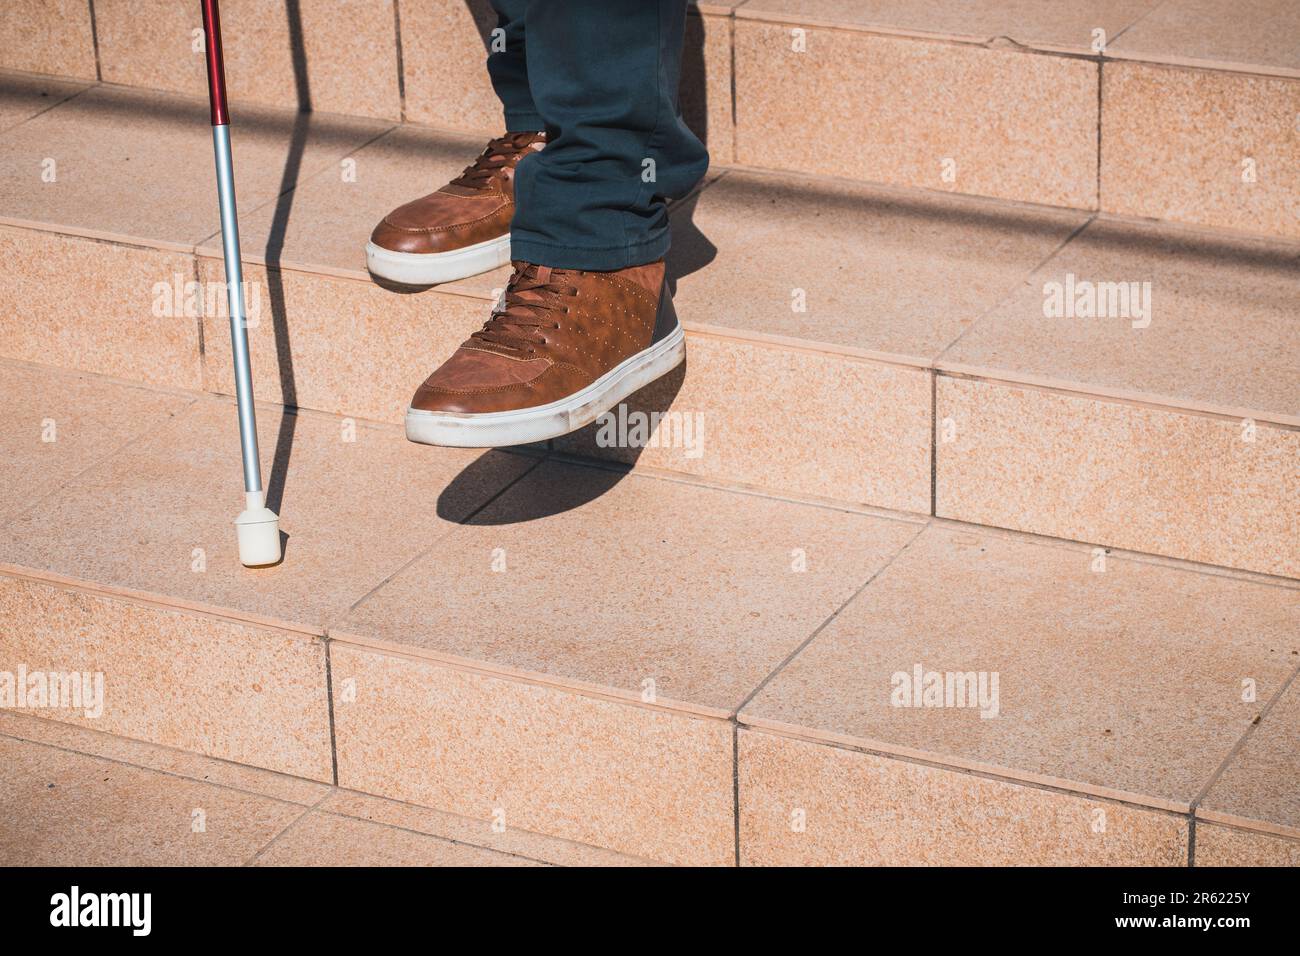 Une personne aveugle essaie de descendre les escaliers pour s'aider avec une canne, des problèmes de handicap, un concept, la facilité d'accès, une stratégie pour l'égalité des personnes Banque D'Images